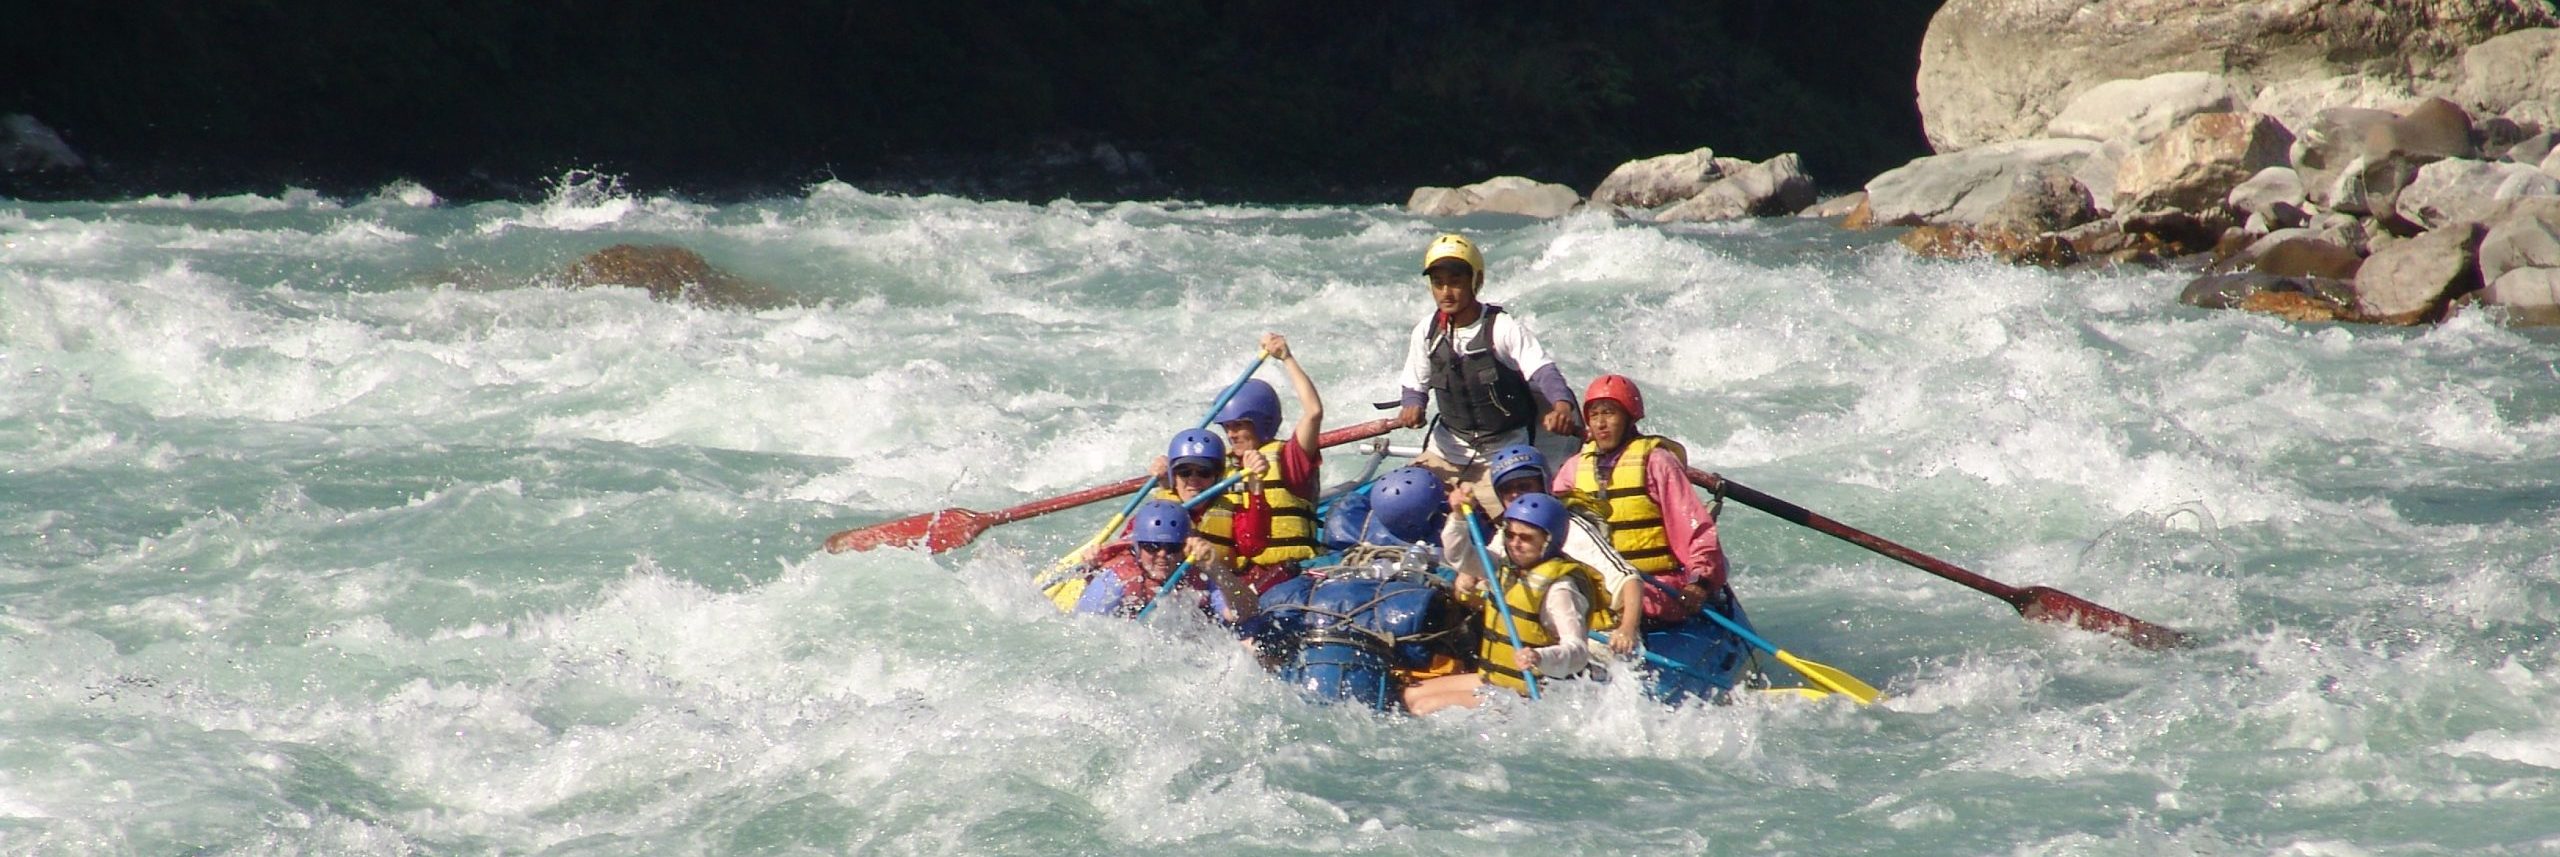 Tamur River rafting